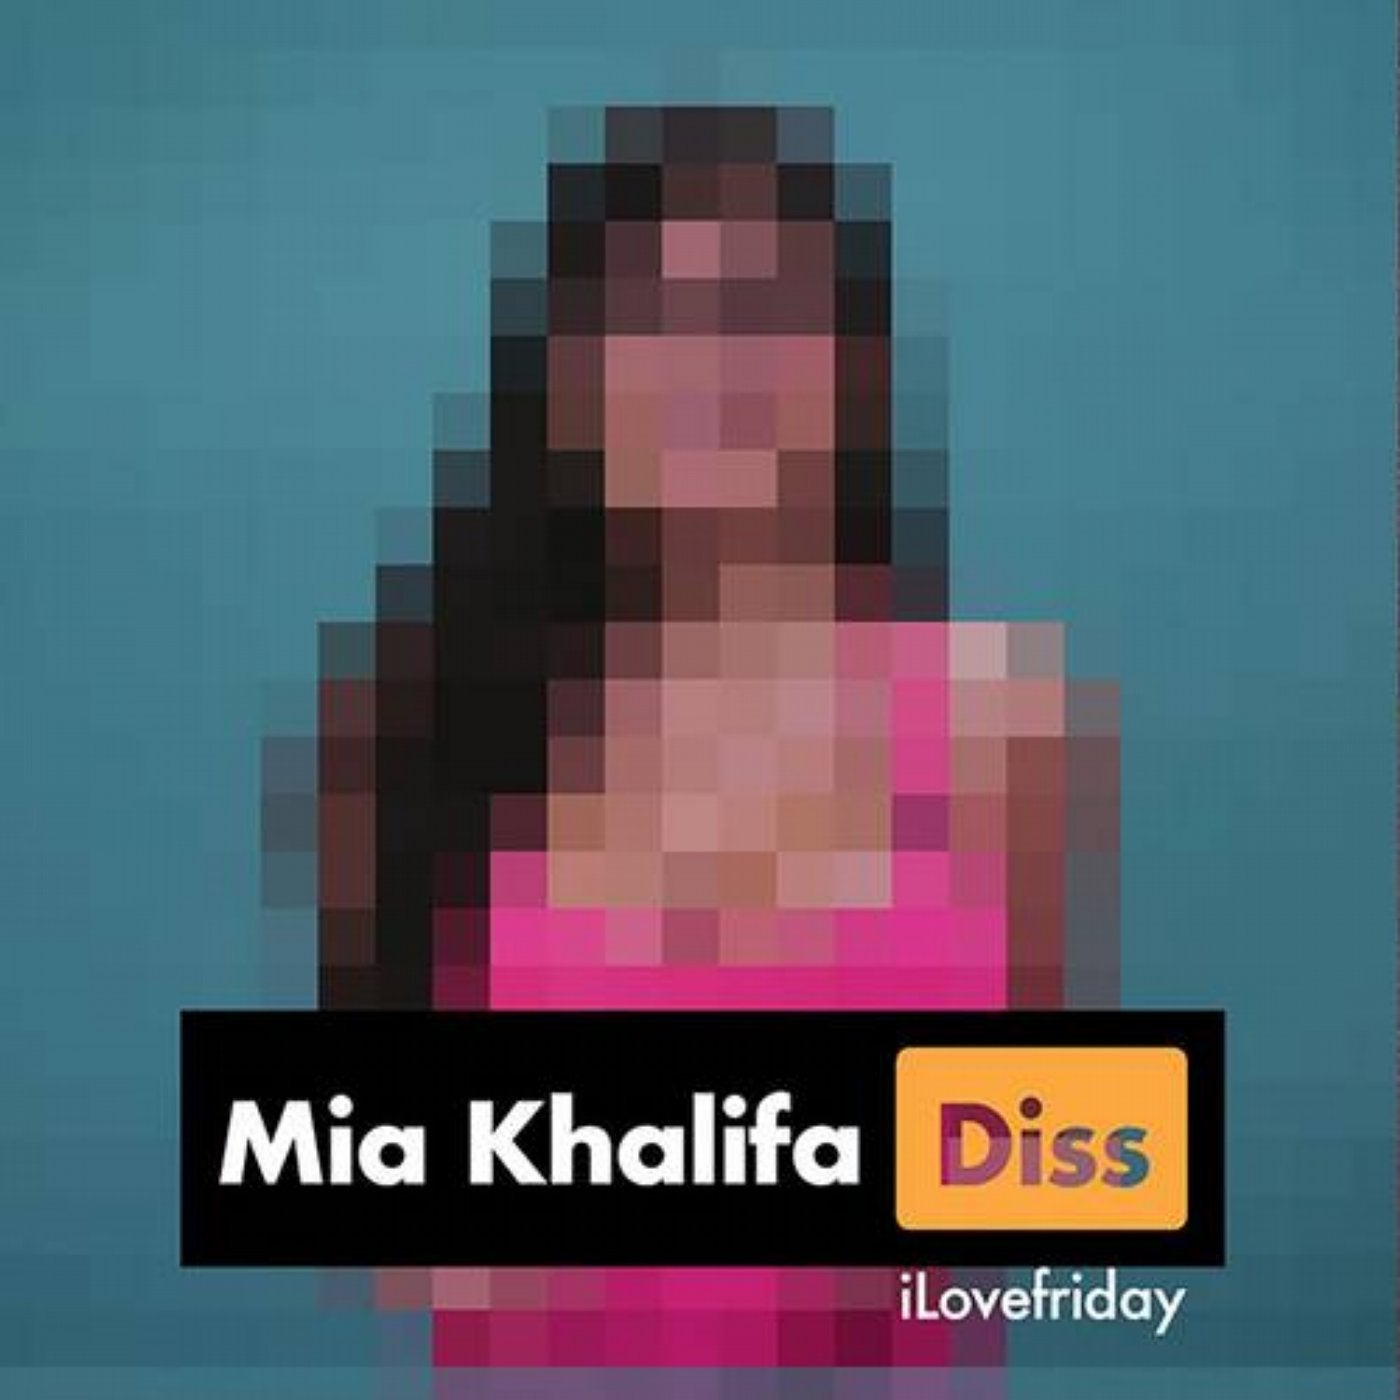 Mia khalifa friend